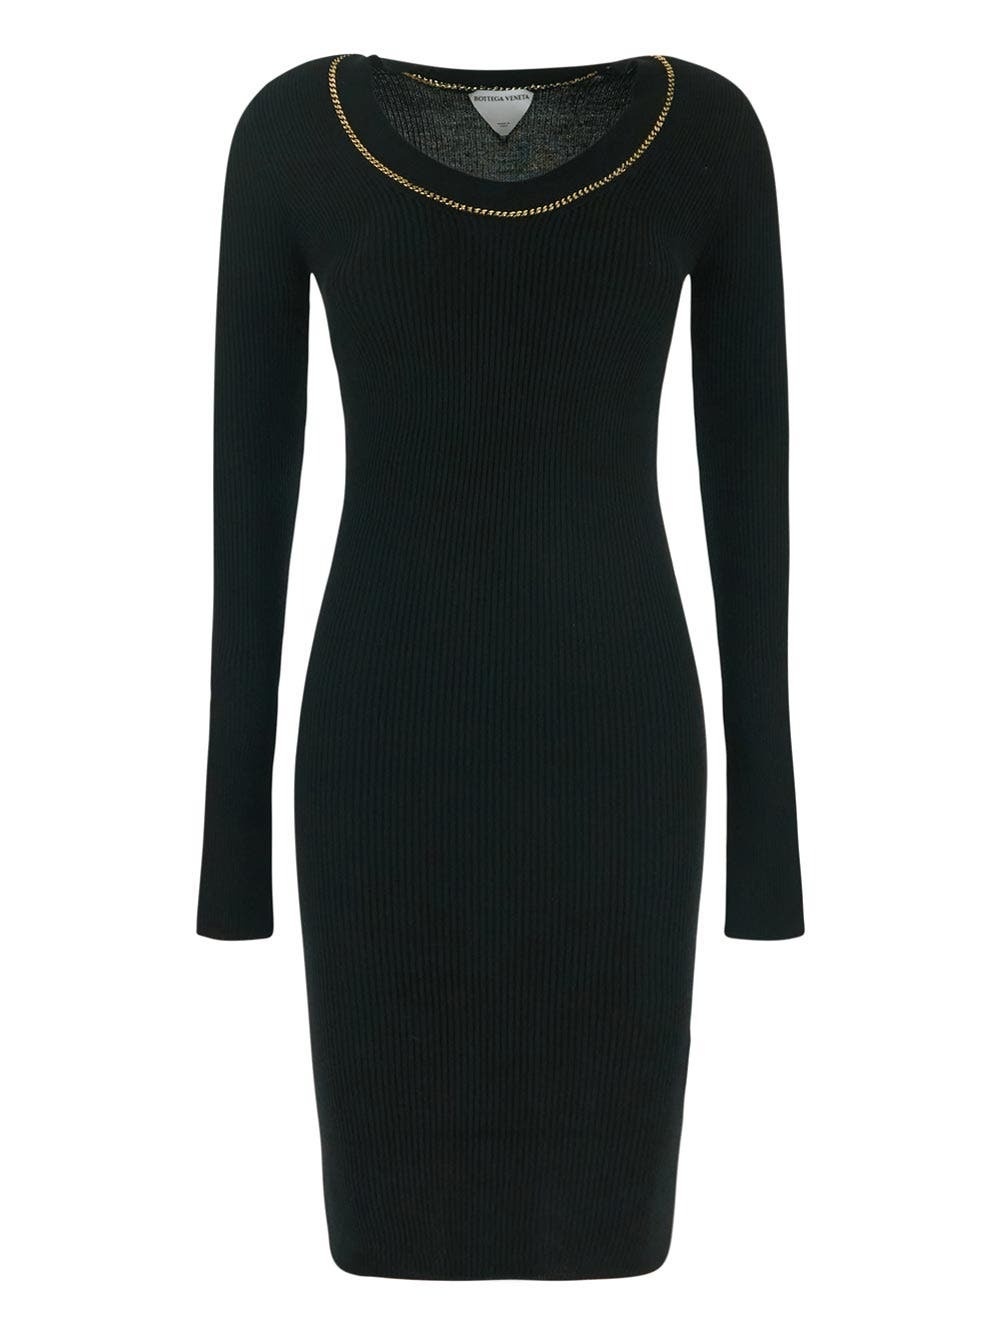 Photo: Bottega Veneta Black Dress With Gold Chain